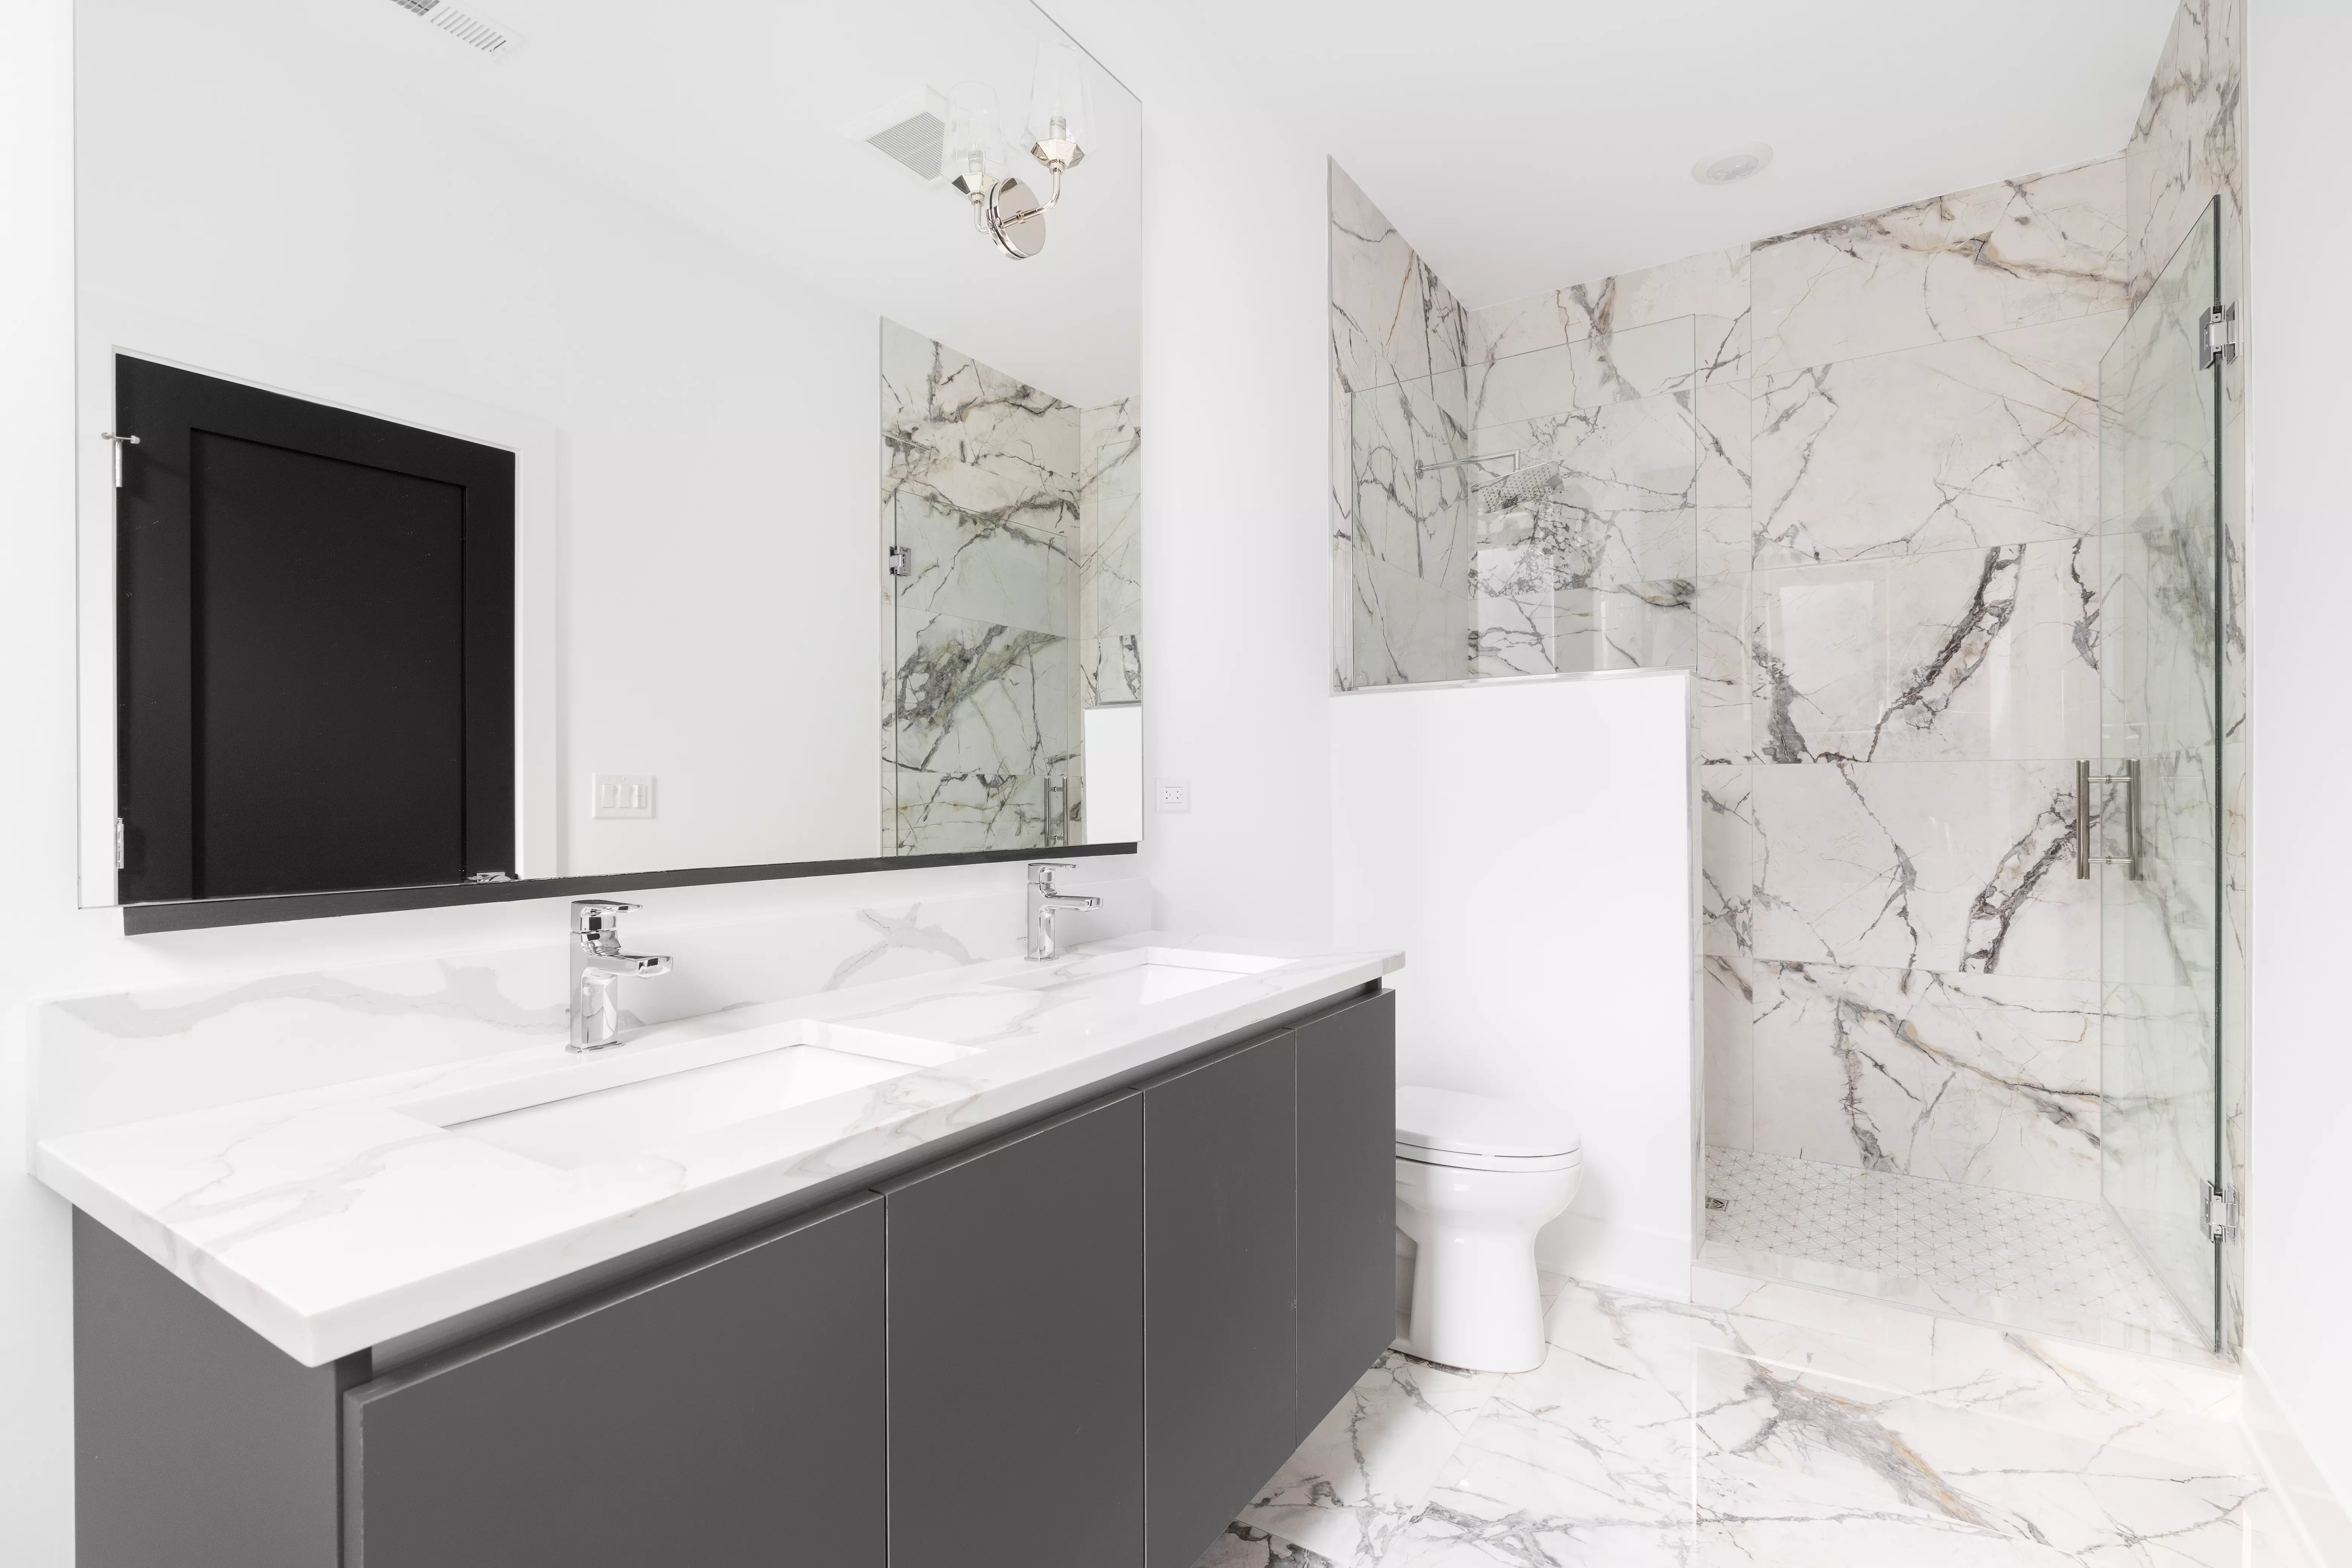 Łazienka w stylu glamour z marmurowym prysznicem. Propozycja dekoru zbliżonego kolorystycznie do aranżacji to Marmur Carrara.